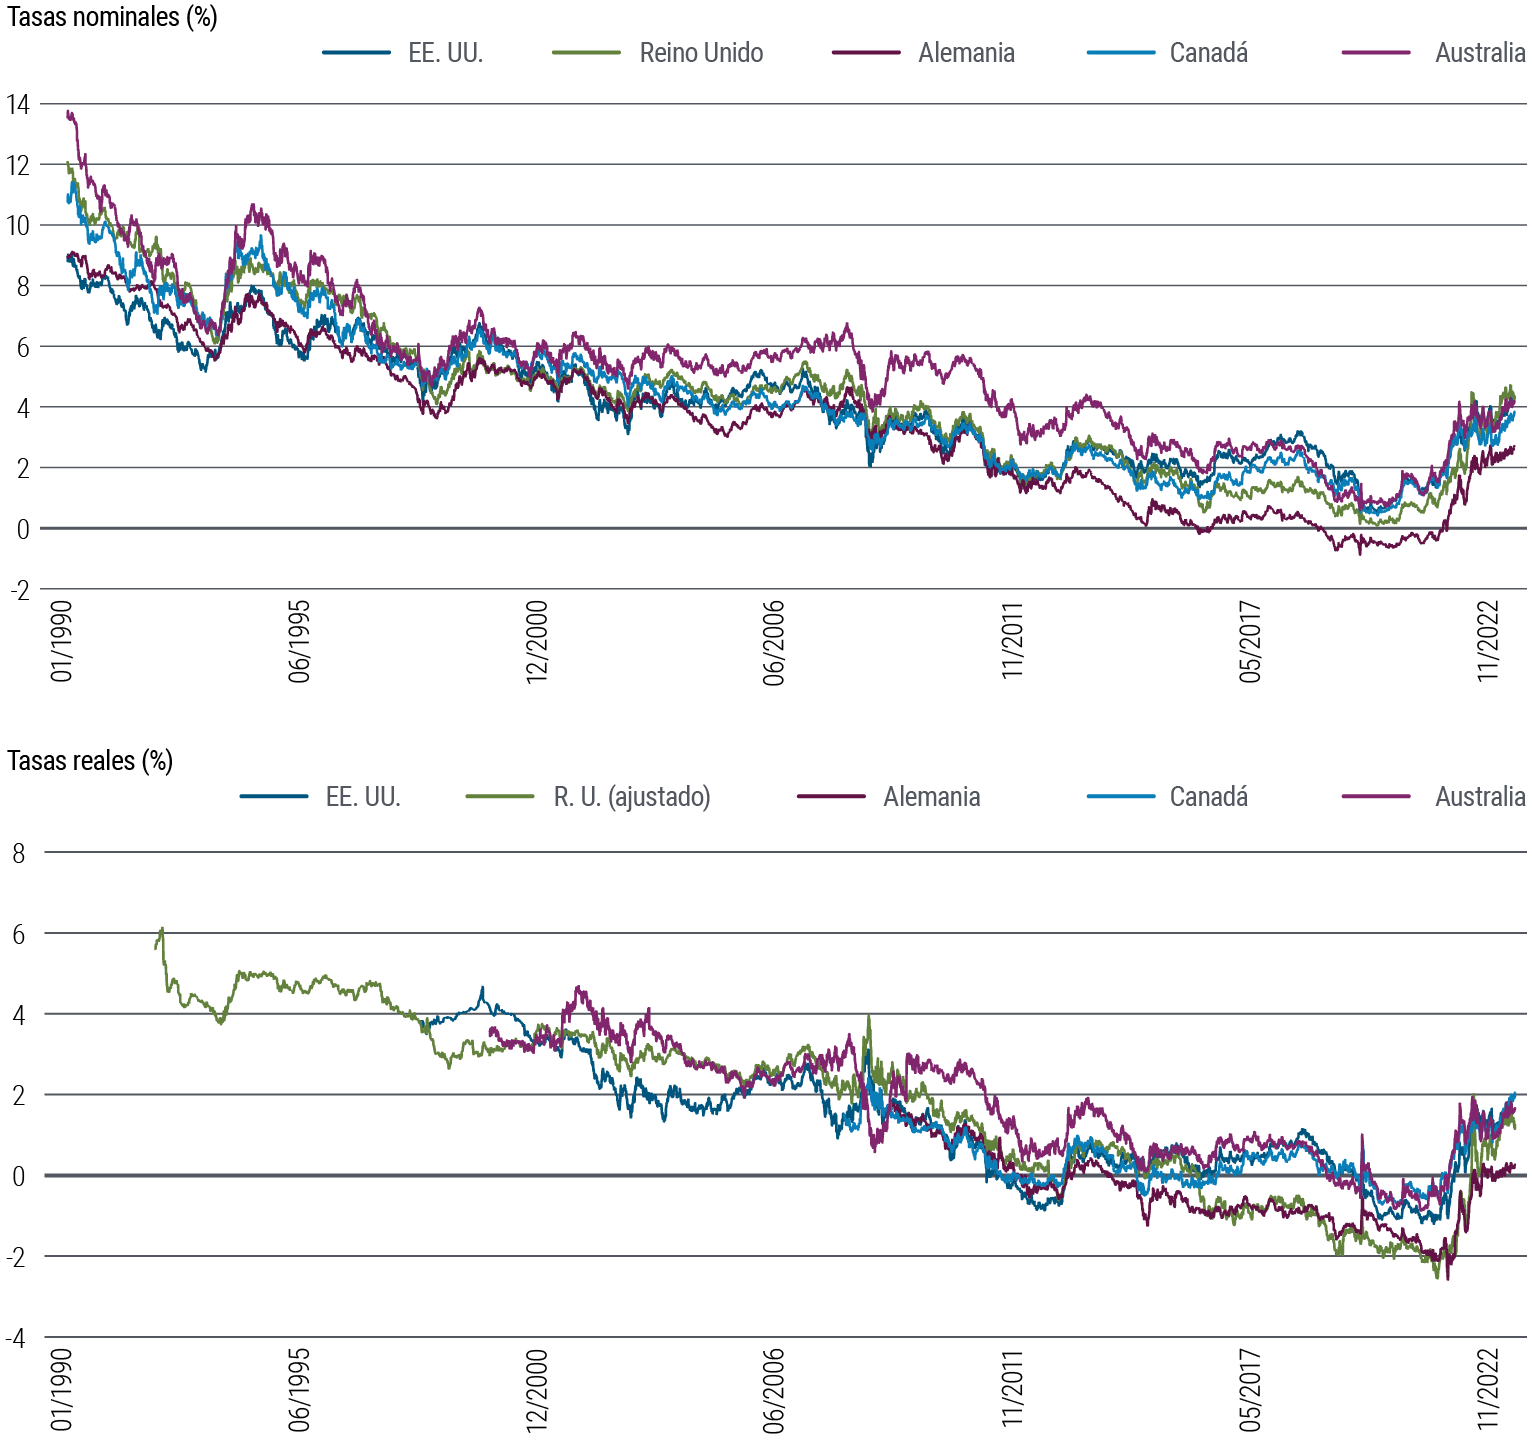 El gráfico 4 contiene dos gráficos de líneas. El primer gráfico muestra las tasas de interés nominales del bono a 10 años de cinco países de mercados desarrollados (Estados Unidos, Reino Unido, Alemania, Canadá y Australia) entre 1990 y septiembre de 2023. En ese periodo, las tasas nominales han fluctuado un poco, pero en general han mostrado una tendencia bajista desde el 9%–14% en 1990 hasta un mínimo cercano al 0% en 2020, en torno a la pandemia. Desde entonces, han vuelto a subir hasta un rango de entre algo más del 2% hasta algo más del 4%. El segundo gráfico muestra las tasas de interés reales del bono a 10 años de los mismos países en el mismo periodo. En general, las tasas reales cayeron de forma gradual durante gran parte del periodo analizado, luego aumentaron bruscamente tras la pandemia y han frenado el ritmo más recientemente, aunque aún siguen por encima de sus mínimos, en un rango de entre el 0,5% y el 2,5%. Los datos proceden de PIMCO y Bloomberg, a 2 de octubre de 2023.